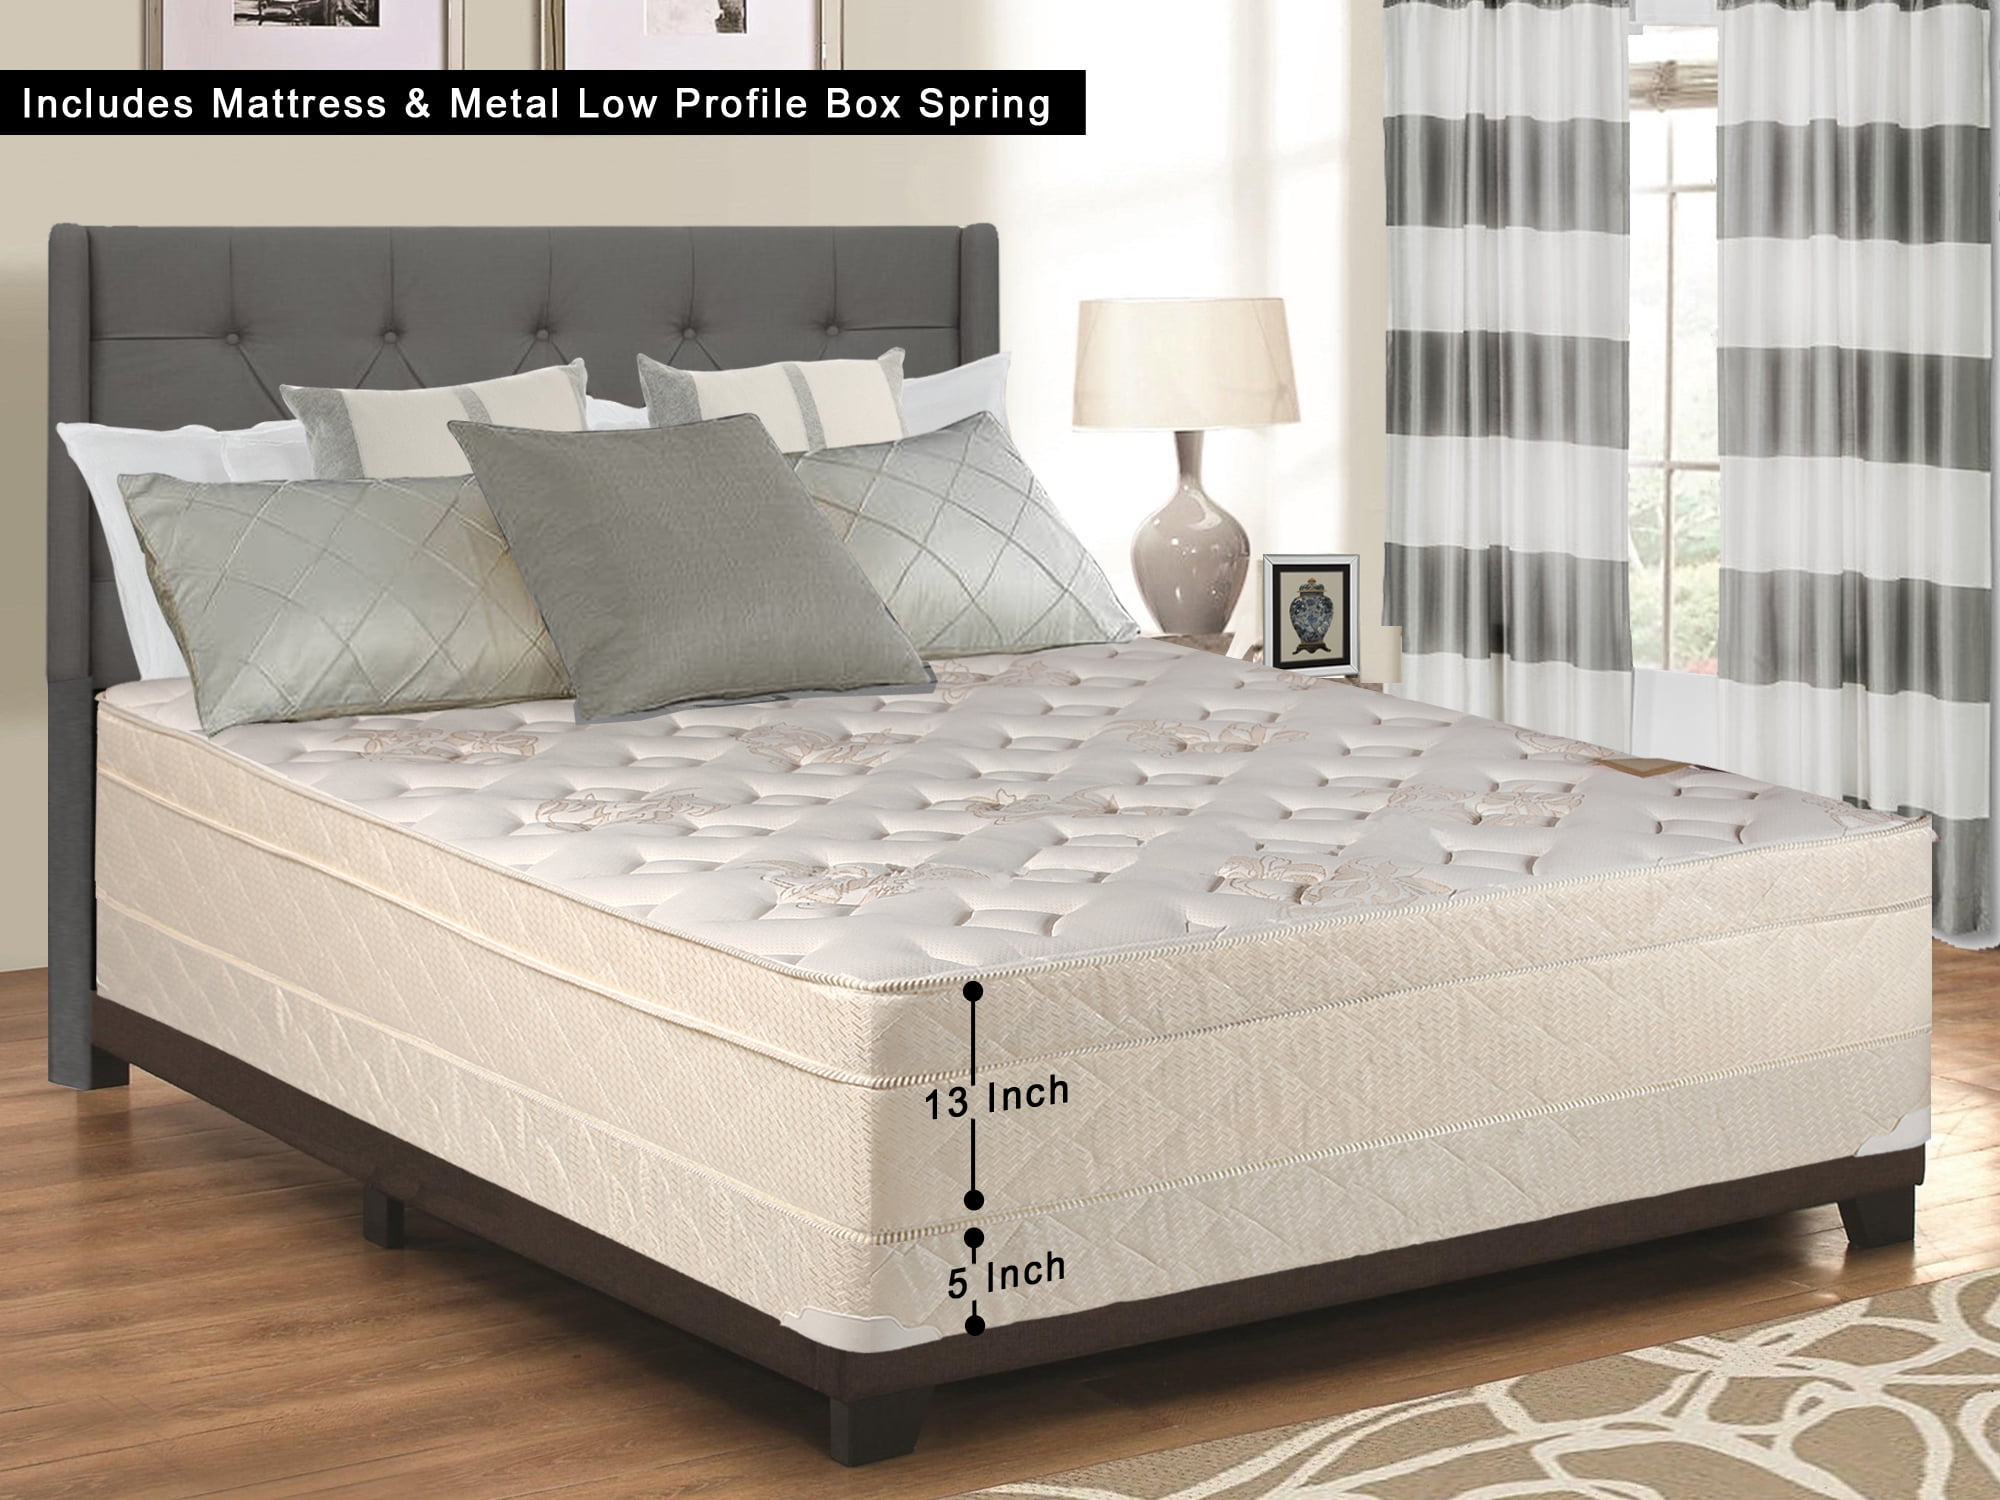 firm innerspring mattress no pillow top